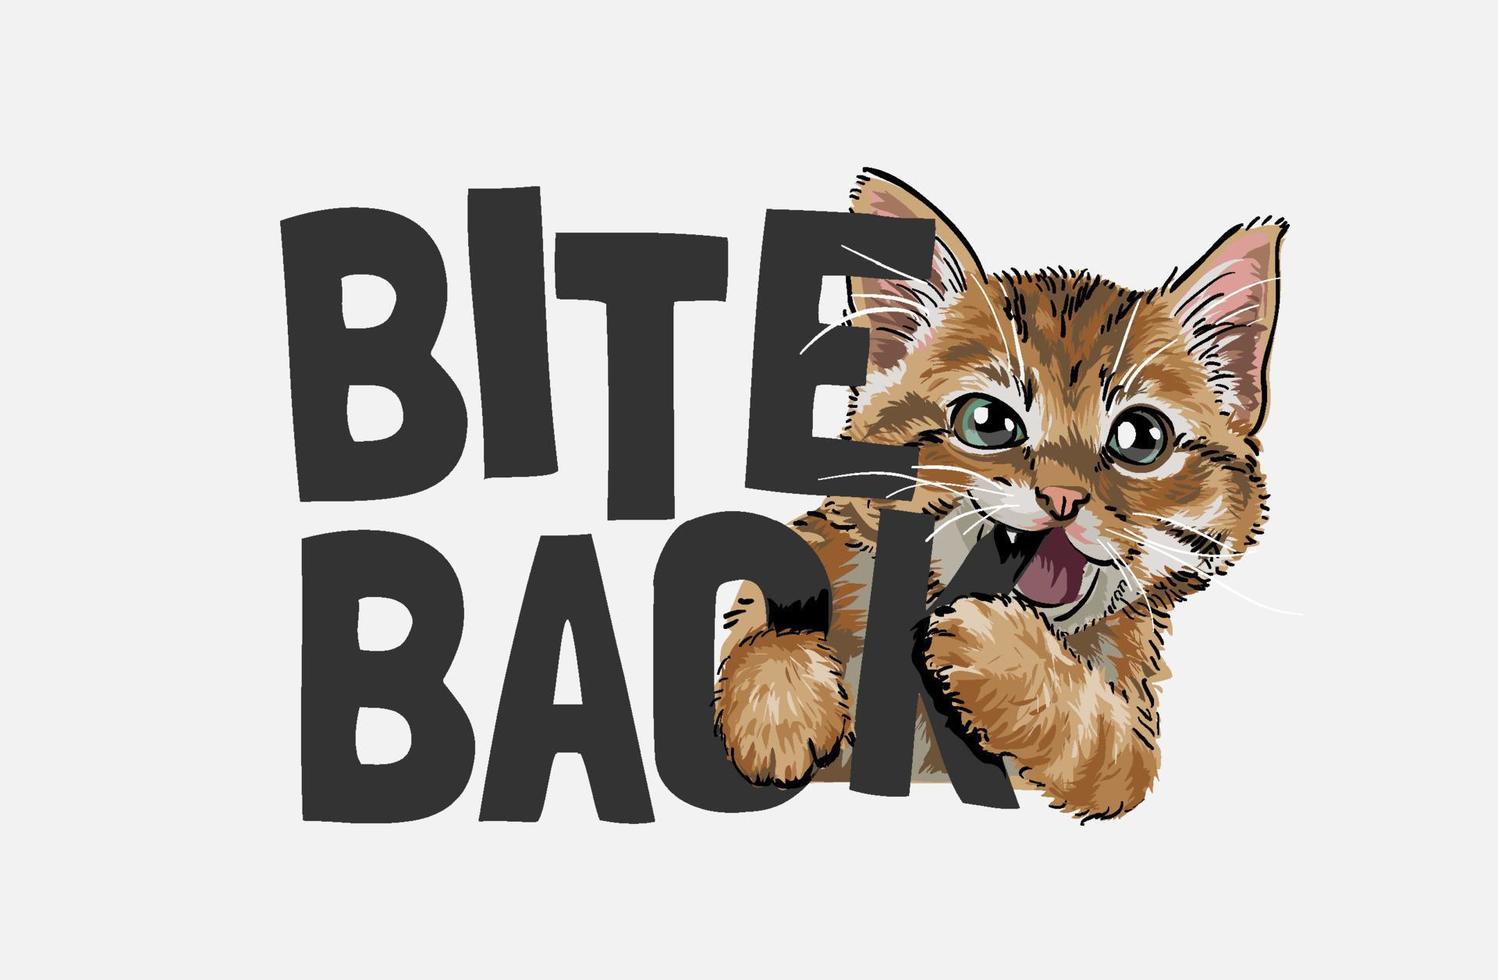 söt katt som biter bett tillbaka slogan illustration vektor